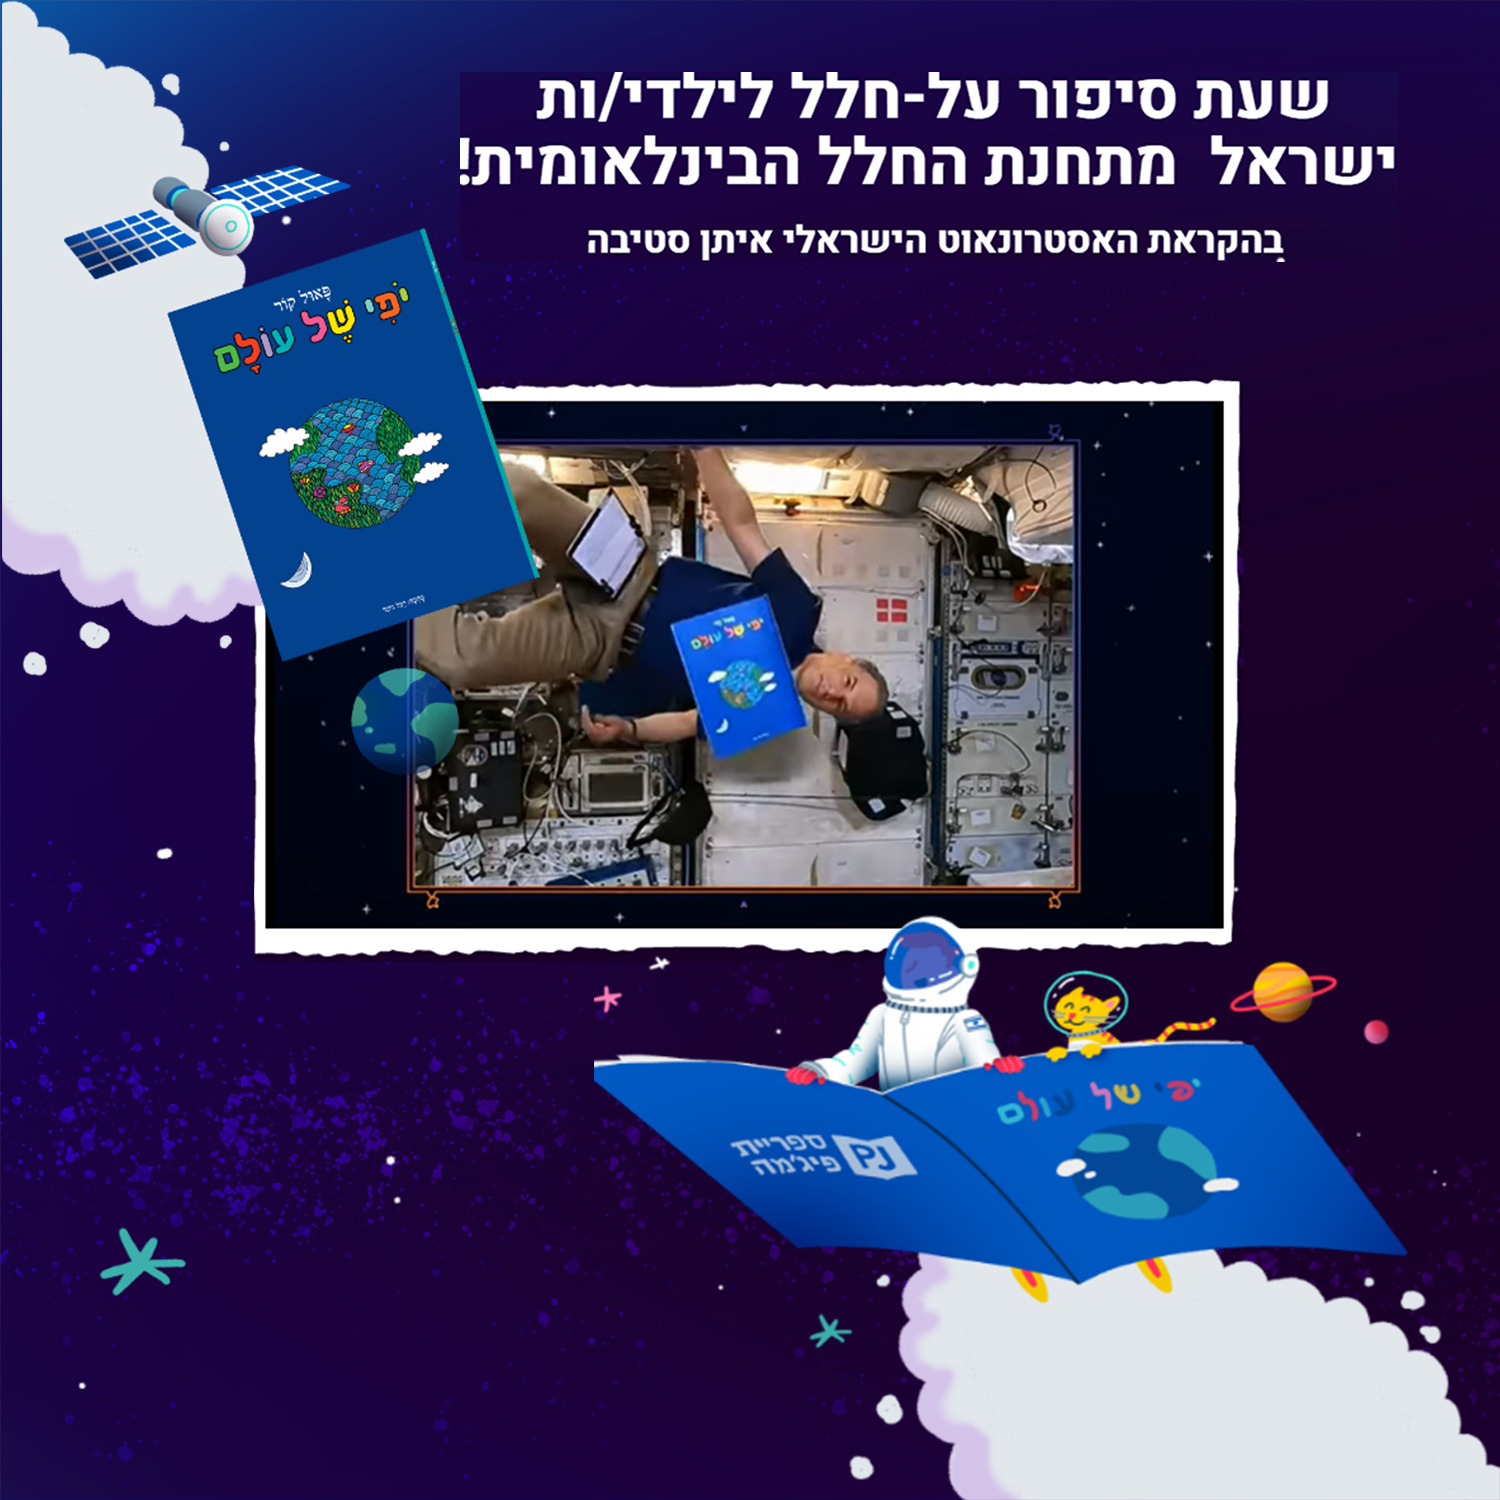 שעת סיפור על-חלל לילדי/ות ישראל מתחנת החלל הבינלאומית!